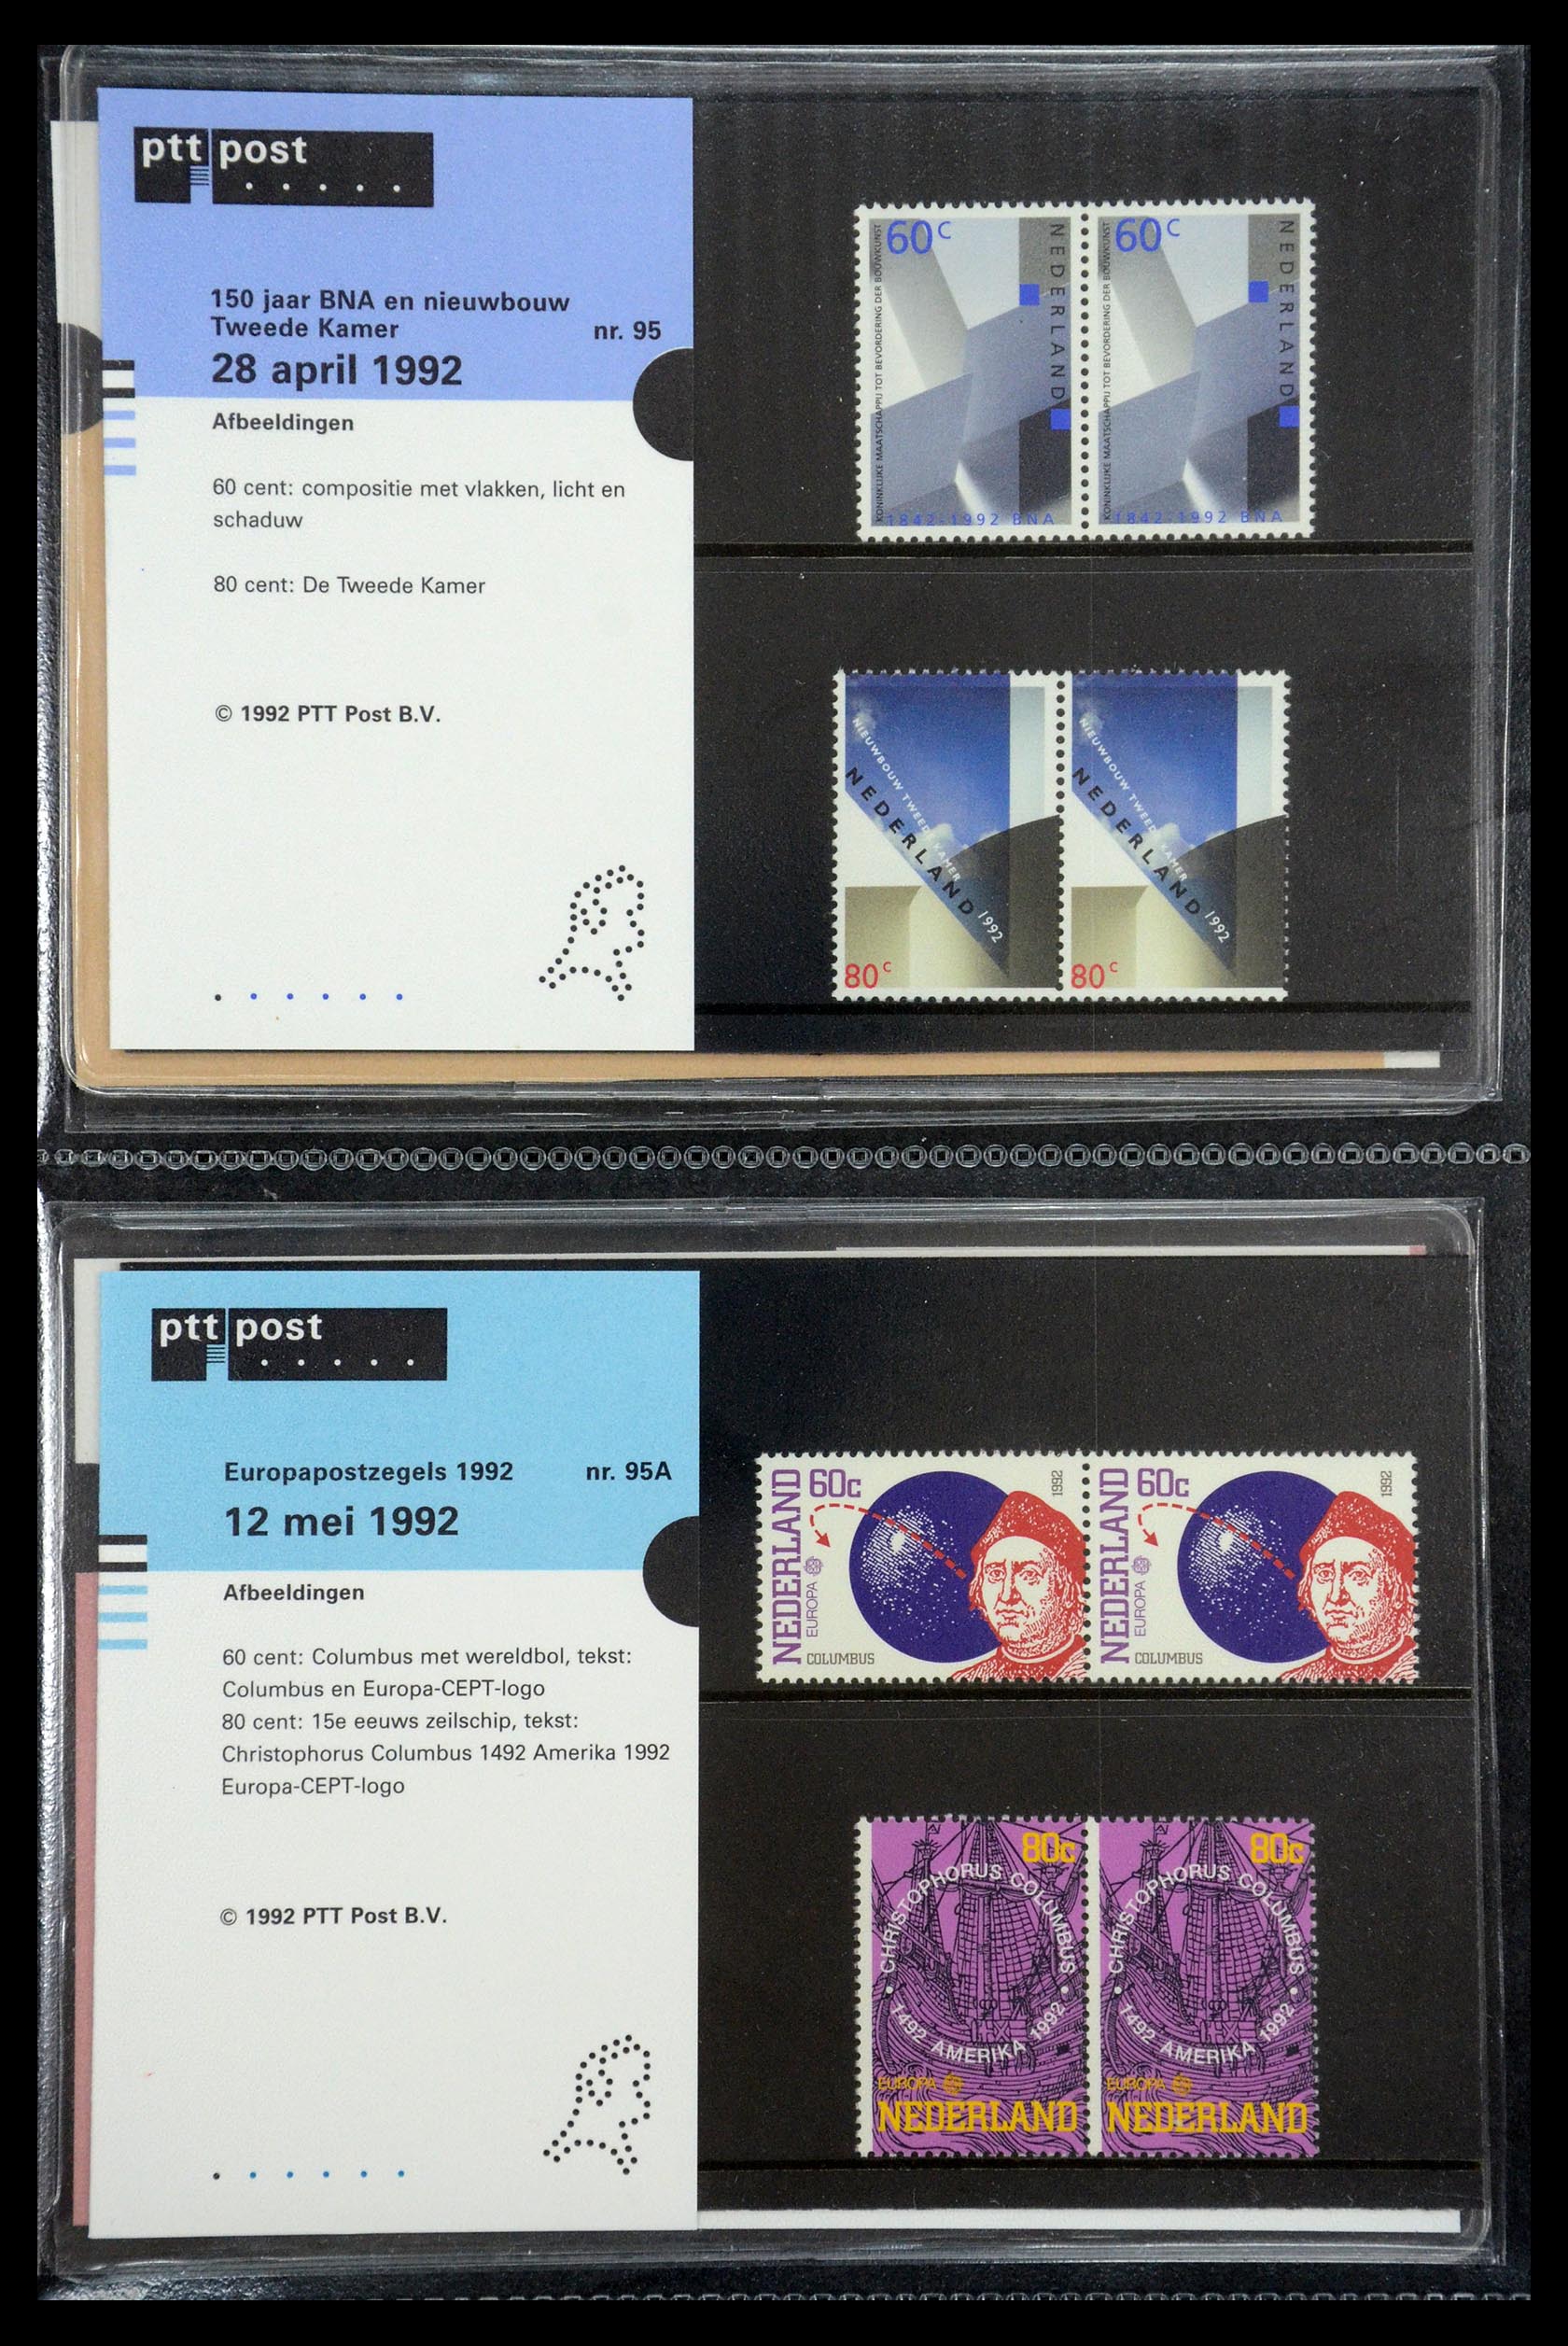 35187 048 - Stamp Collection 35187 Netherlands PTT presentation packs 1982-2019!